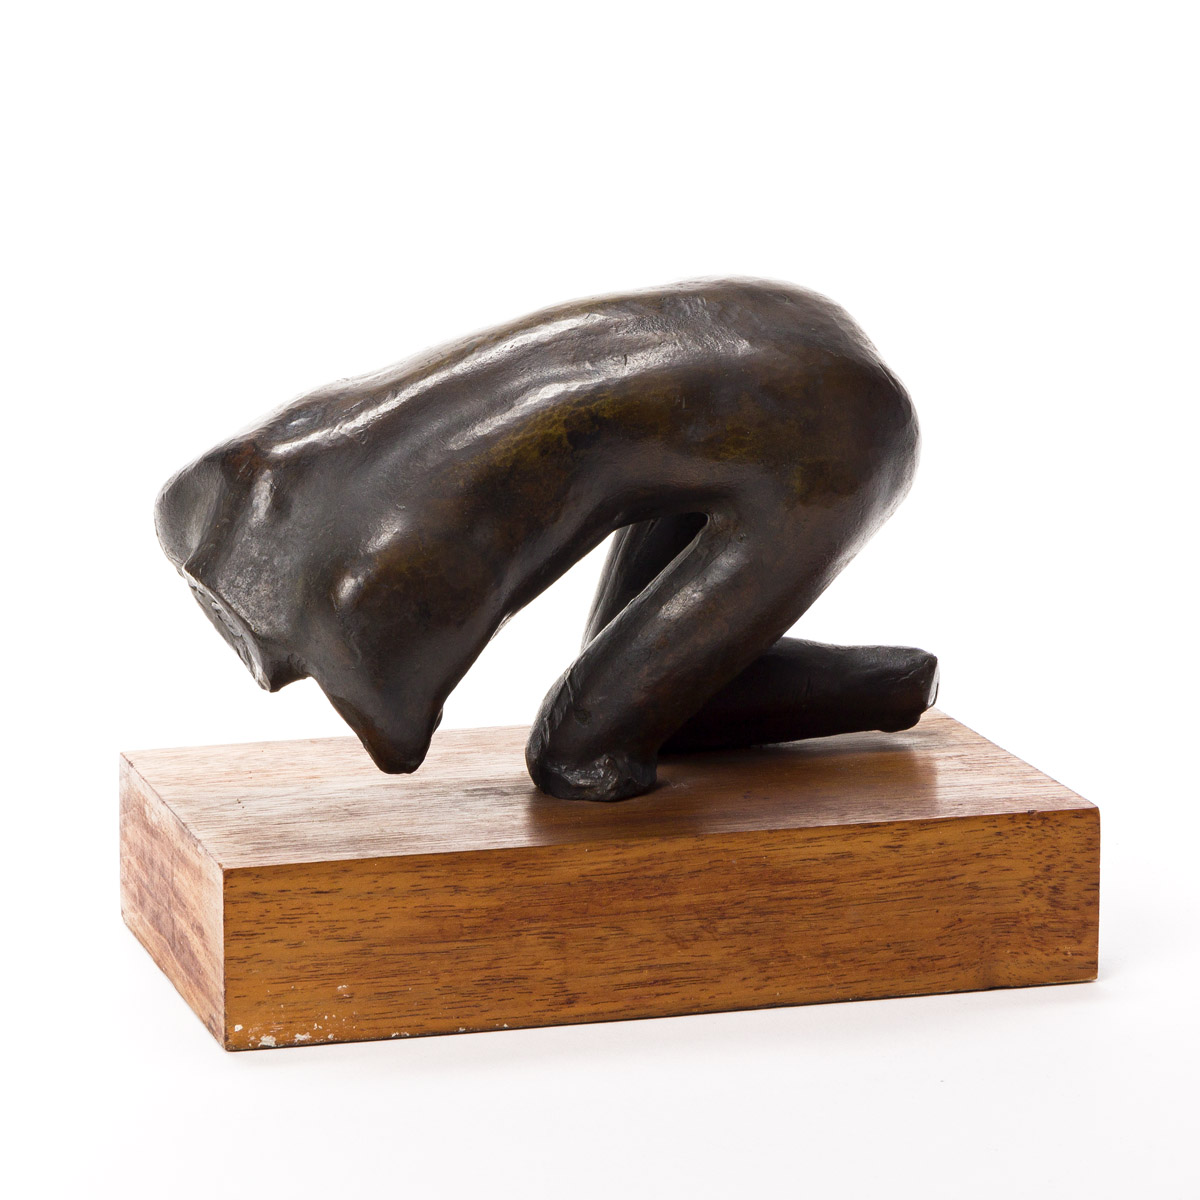 SAUL BAIZERMAN (1889-1957) Two bronze sculptures.